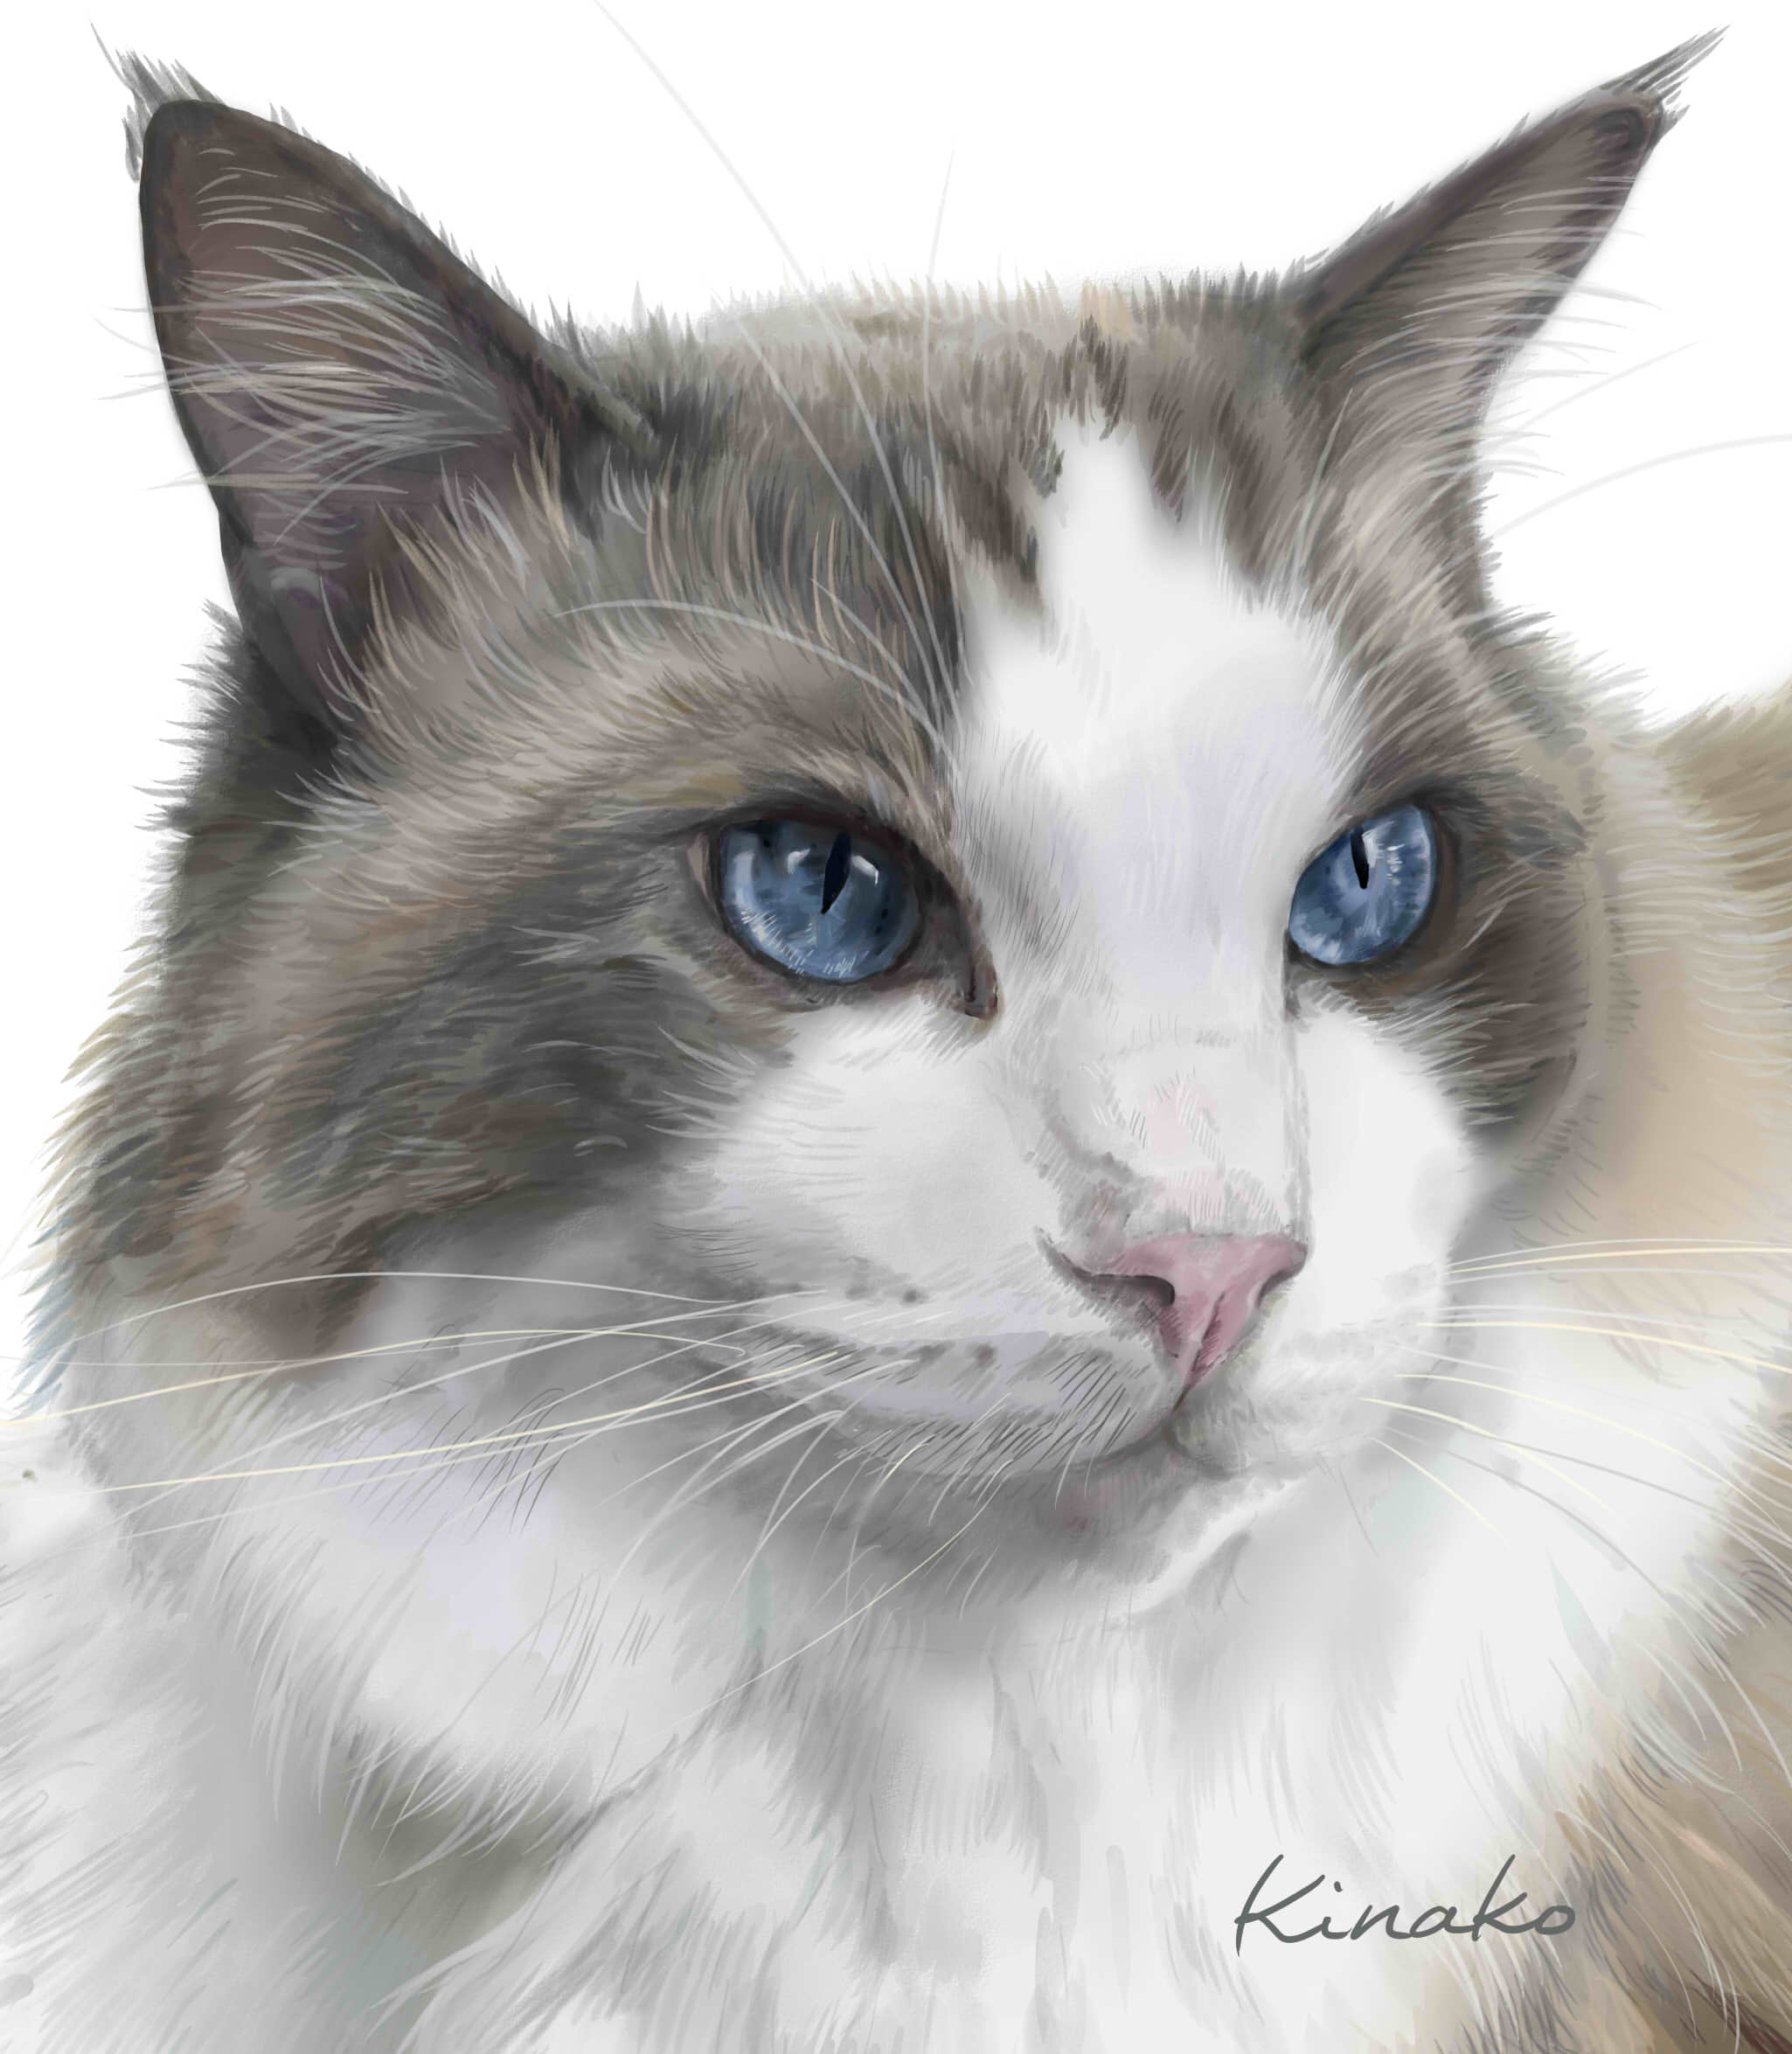 きなこ 猫の絵を描いています 昨日のブルーの目の猫ちゃん完成しました るう Amp ぴすけさんのラグドールのるうちゃんです きれいですね 先日描いた ぴすけちゃんと ちょっと無理やり 並べてみました 猫絵 Cat Drawing 猫イラスト